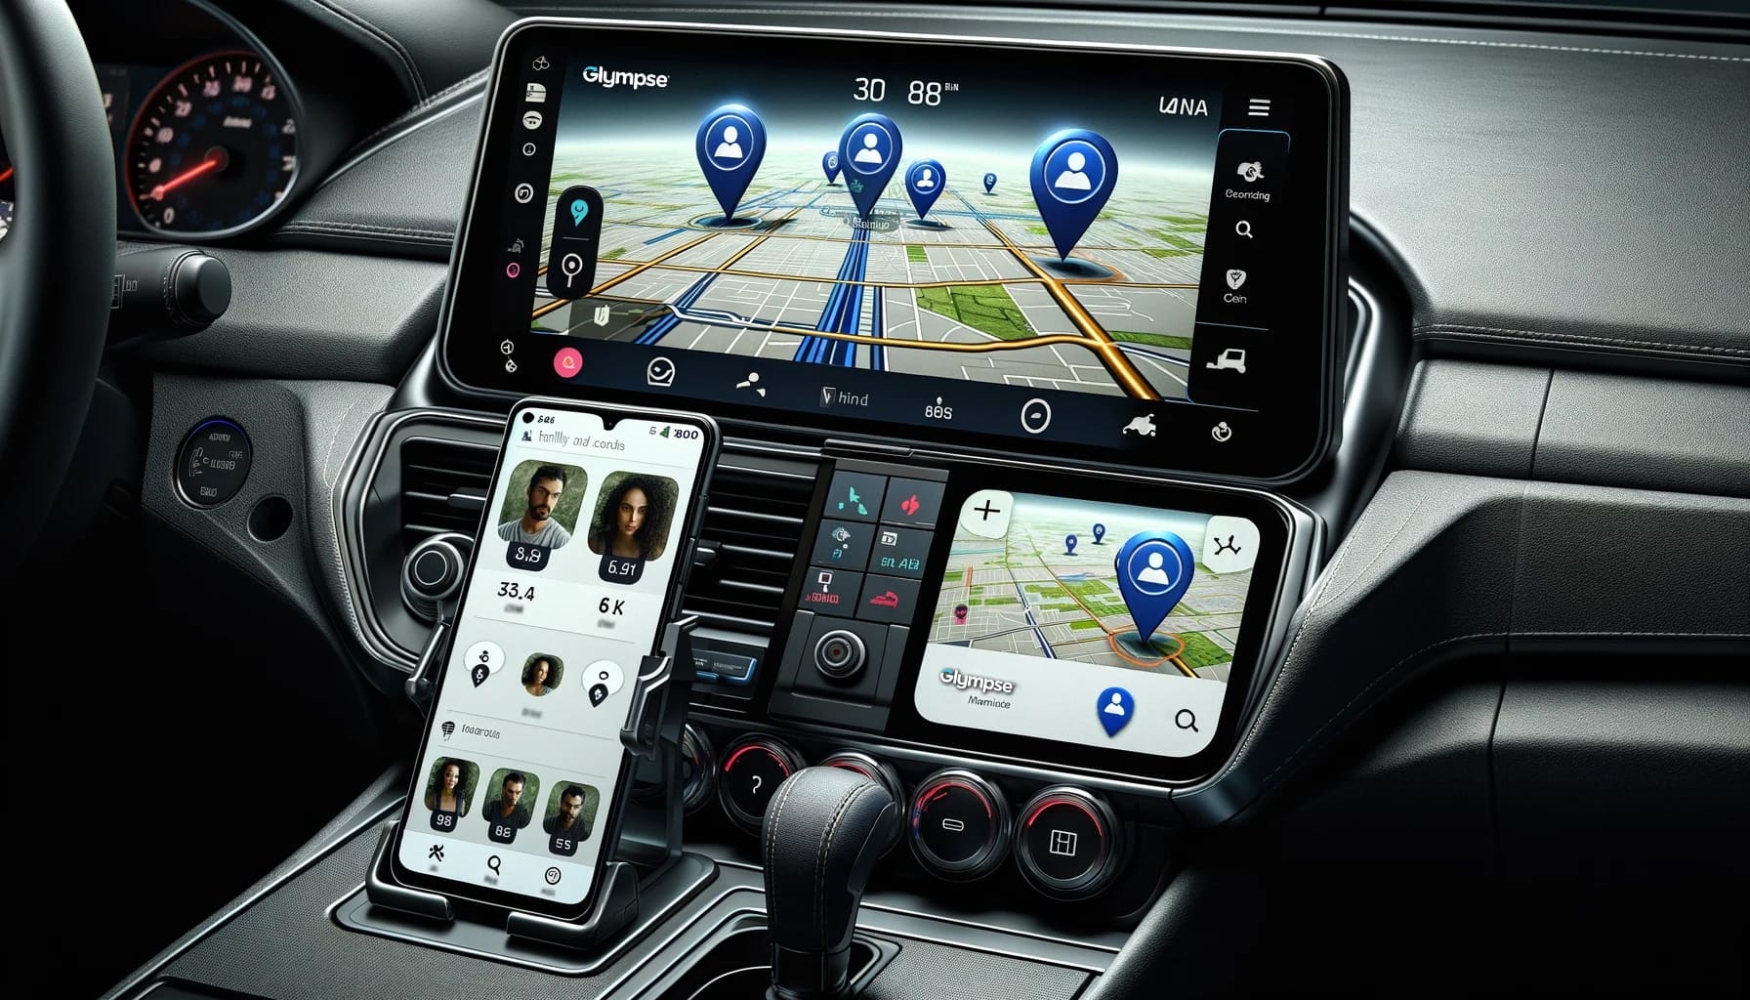 Panel de coche con gadgets para la localización GPS en Glympse